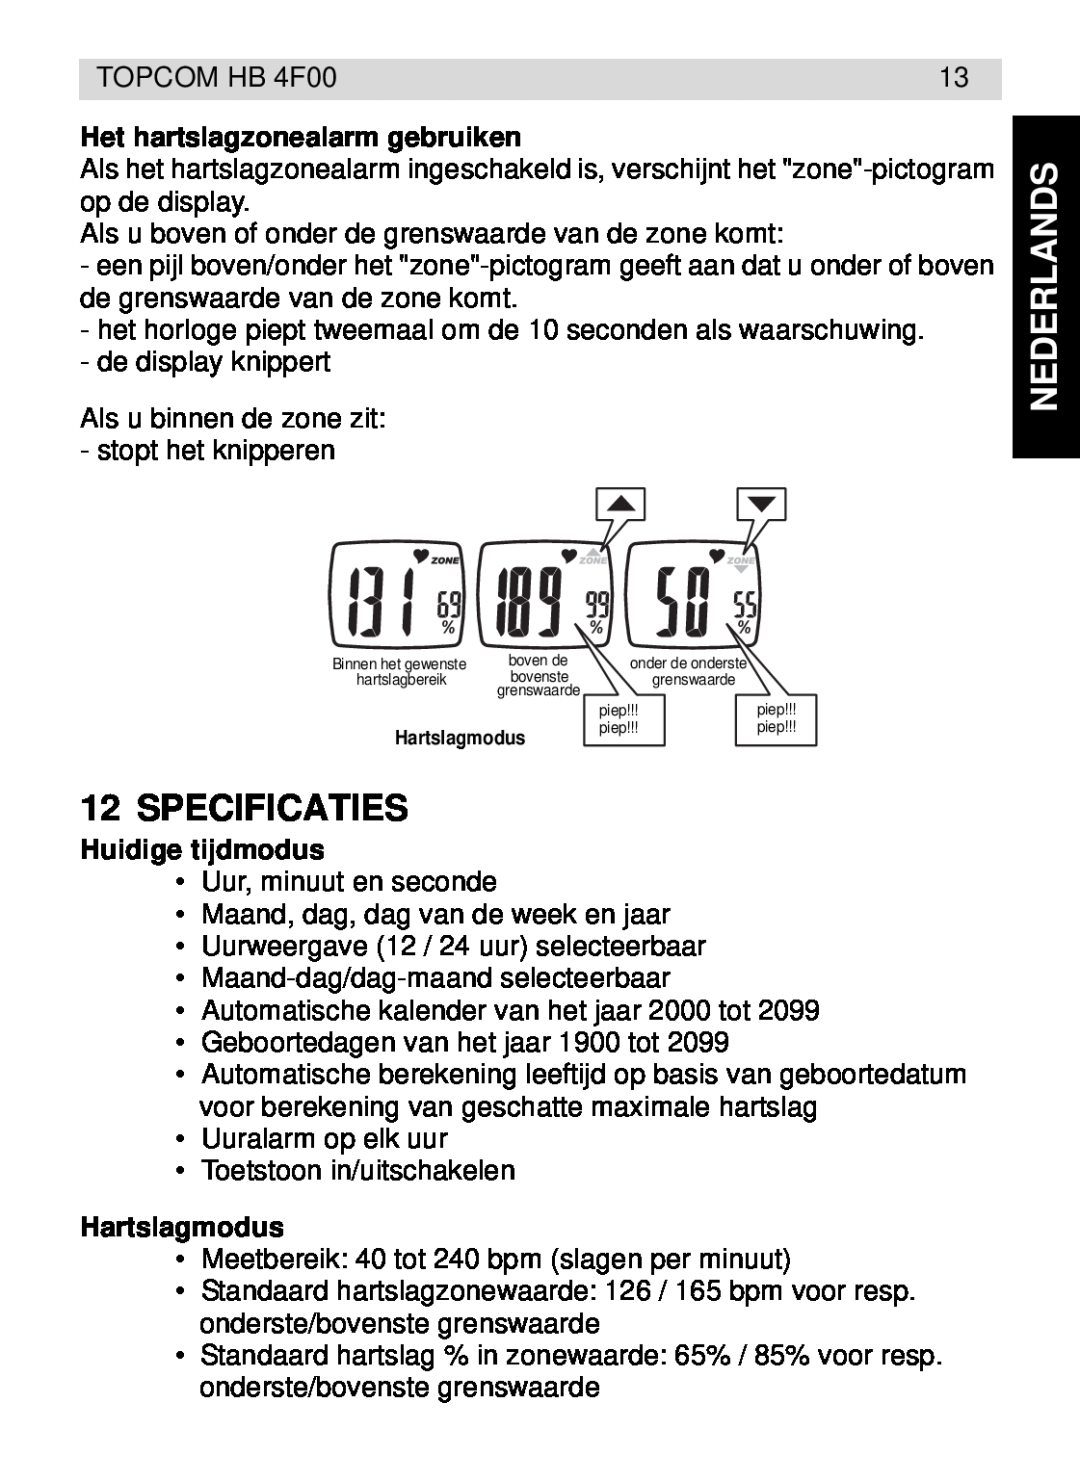 Topcom HB 4F00 manual Specificaties, Het hartslagzonealarm gebruiken, Huidige tijdmodus, Hartslagmodus, Nederlands 